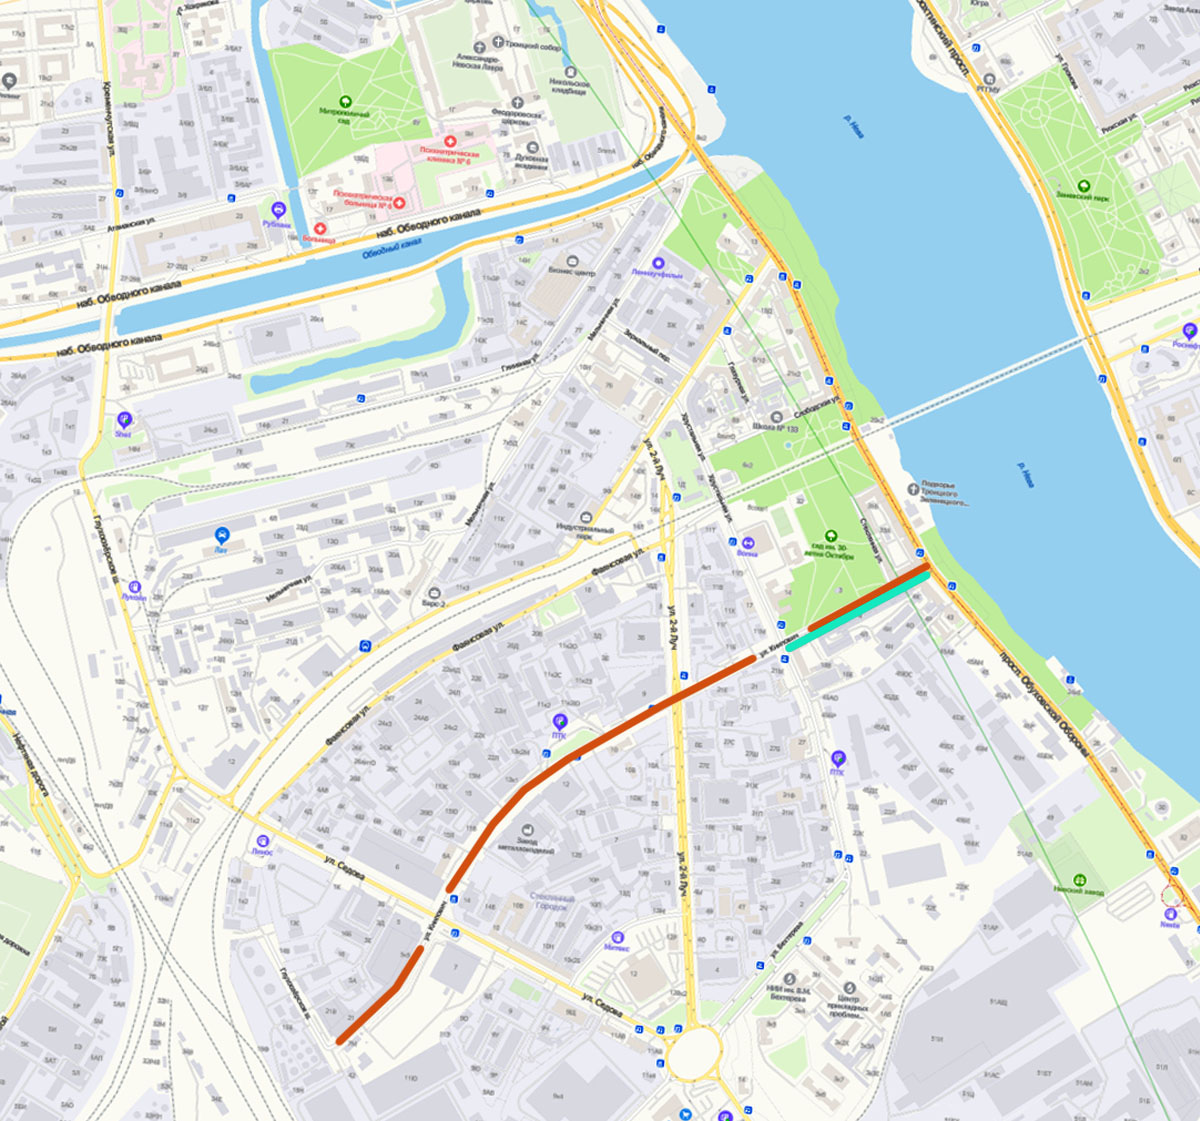 Улица Книпович на современной карте Санкт-Петербурга (yandex.ru) — красная линия. Бирюзовым цветом показан отрезок бывшей Смоляной улицы